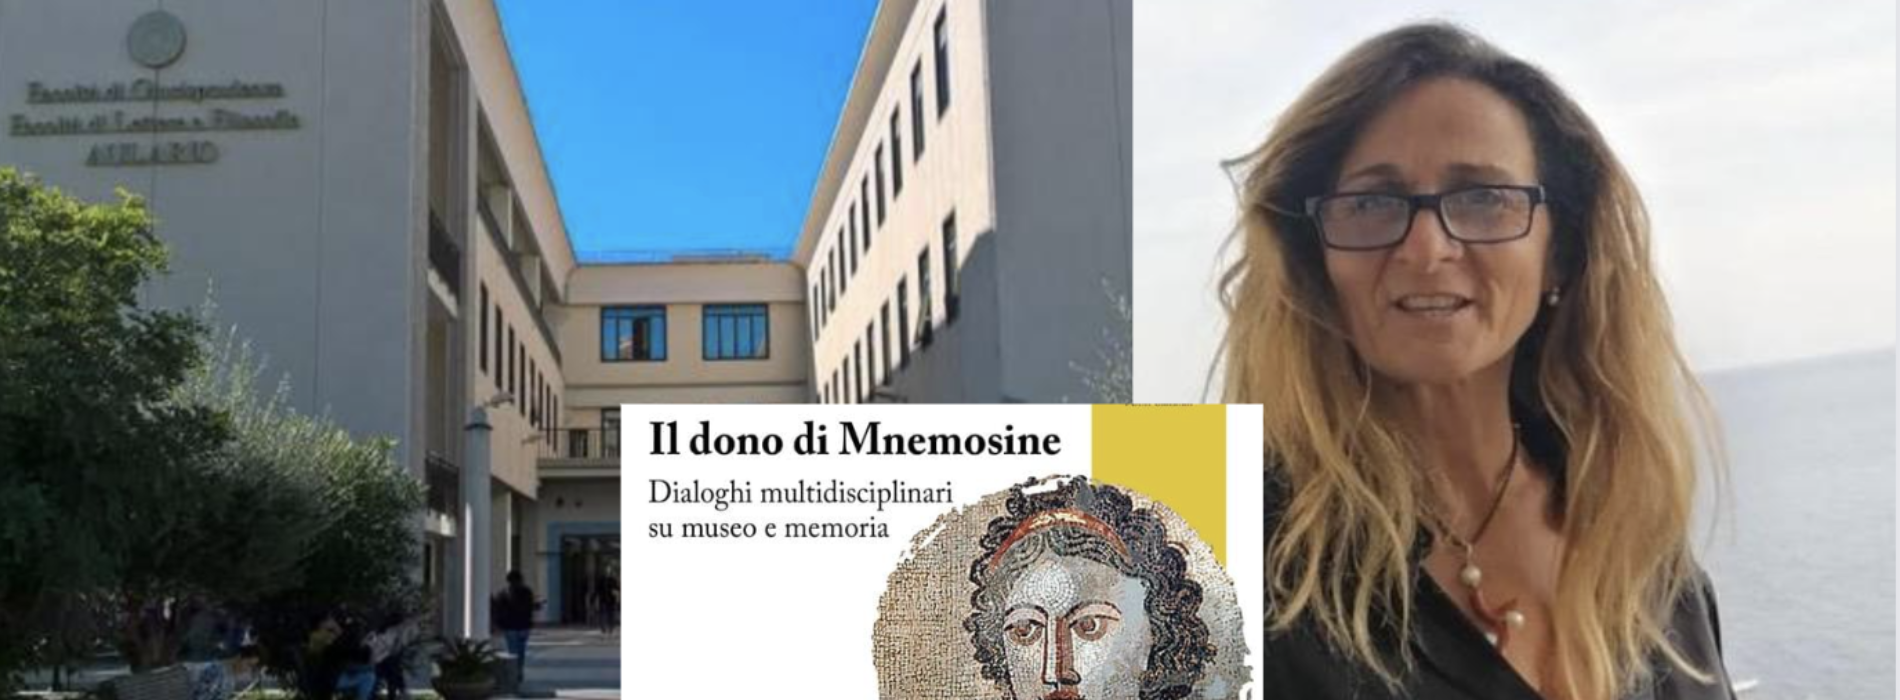 Il dono di Mnemosine, la Vanvitelli parla di memoria a Napoli